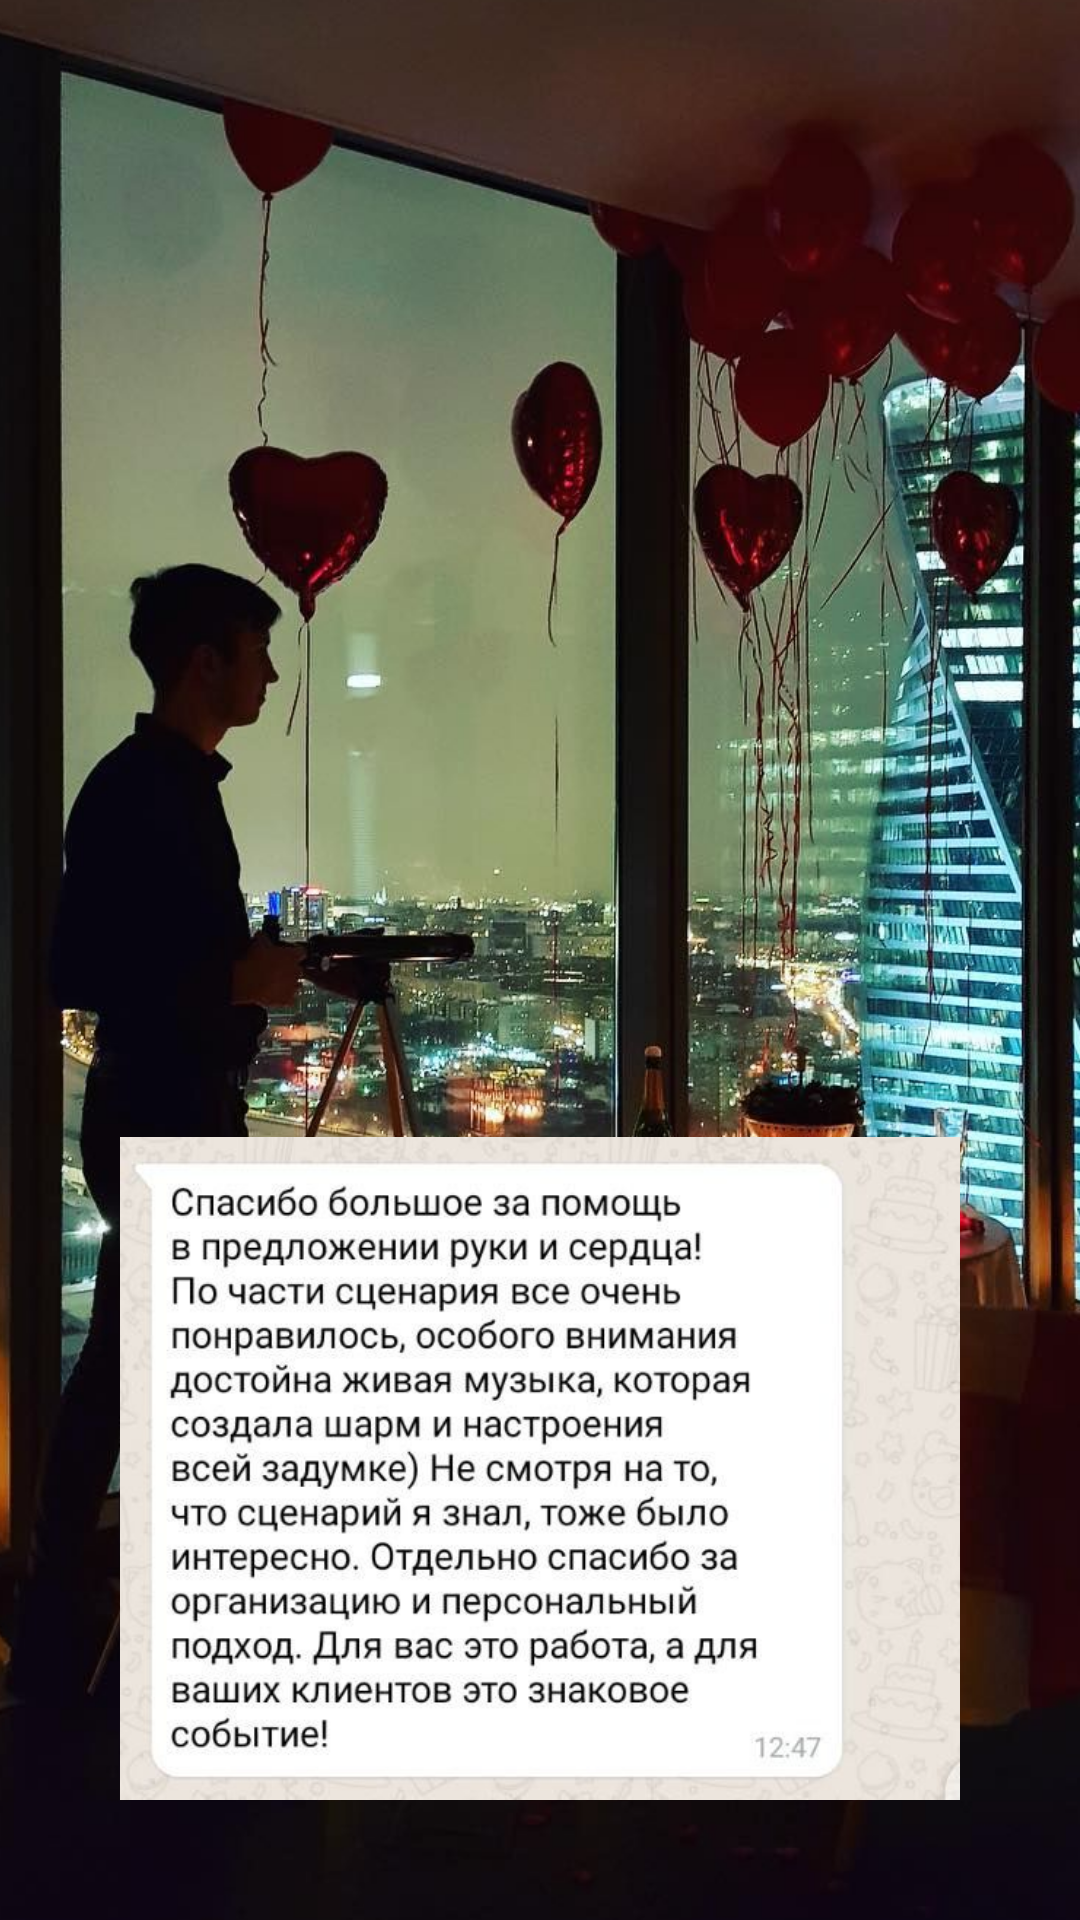 Организация предложения руки и сердца в Белгороде
от компании Pandaevent